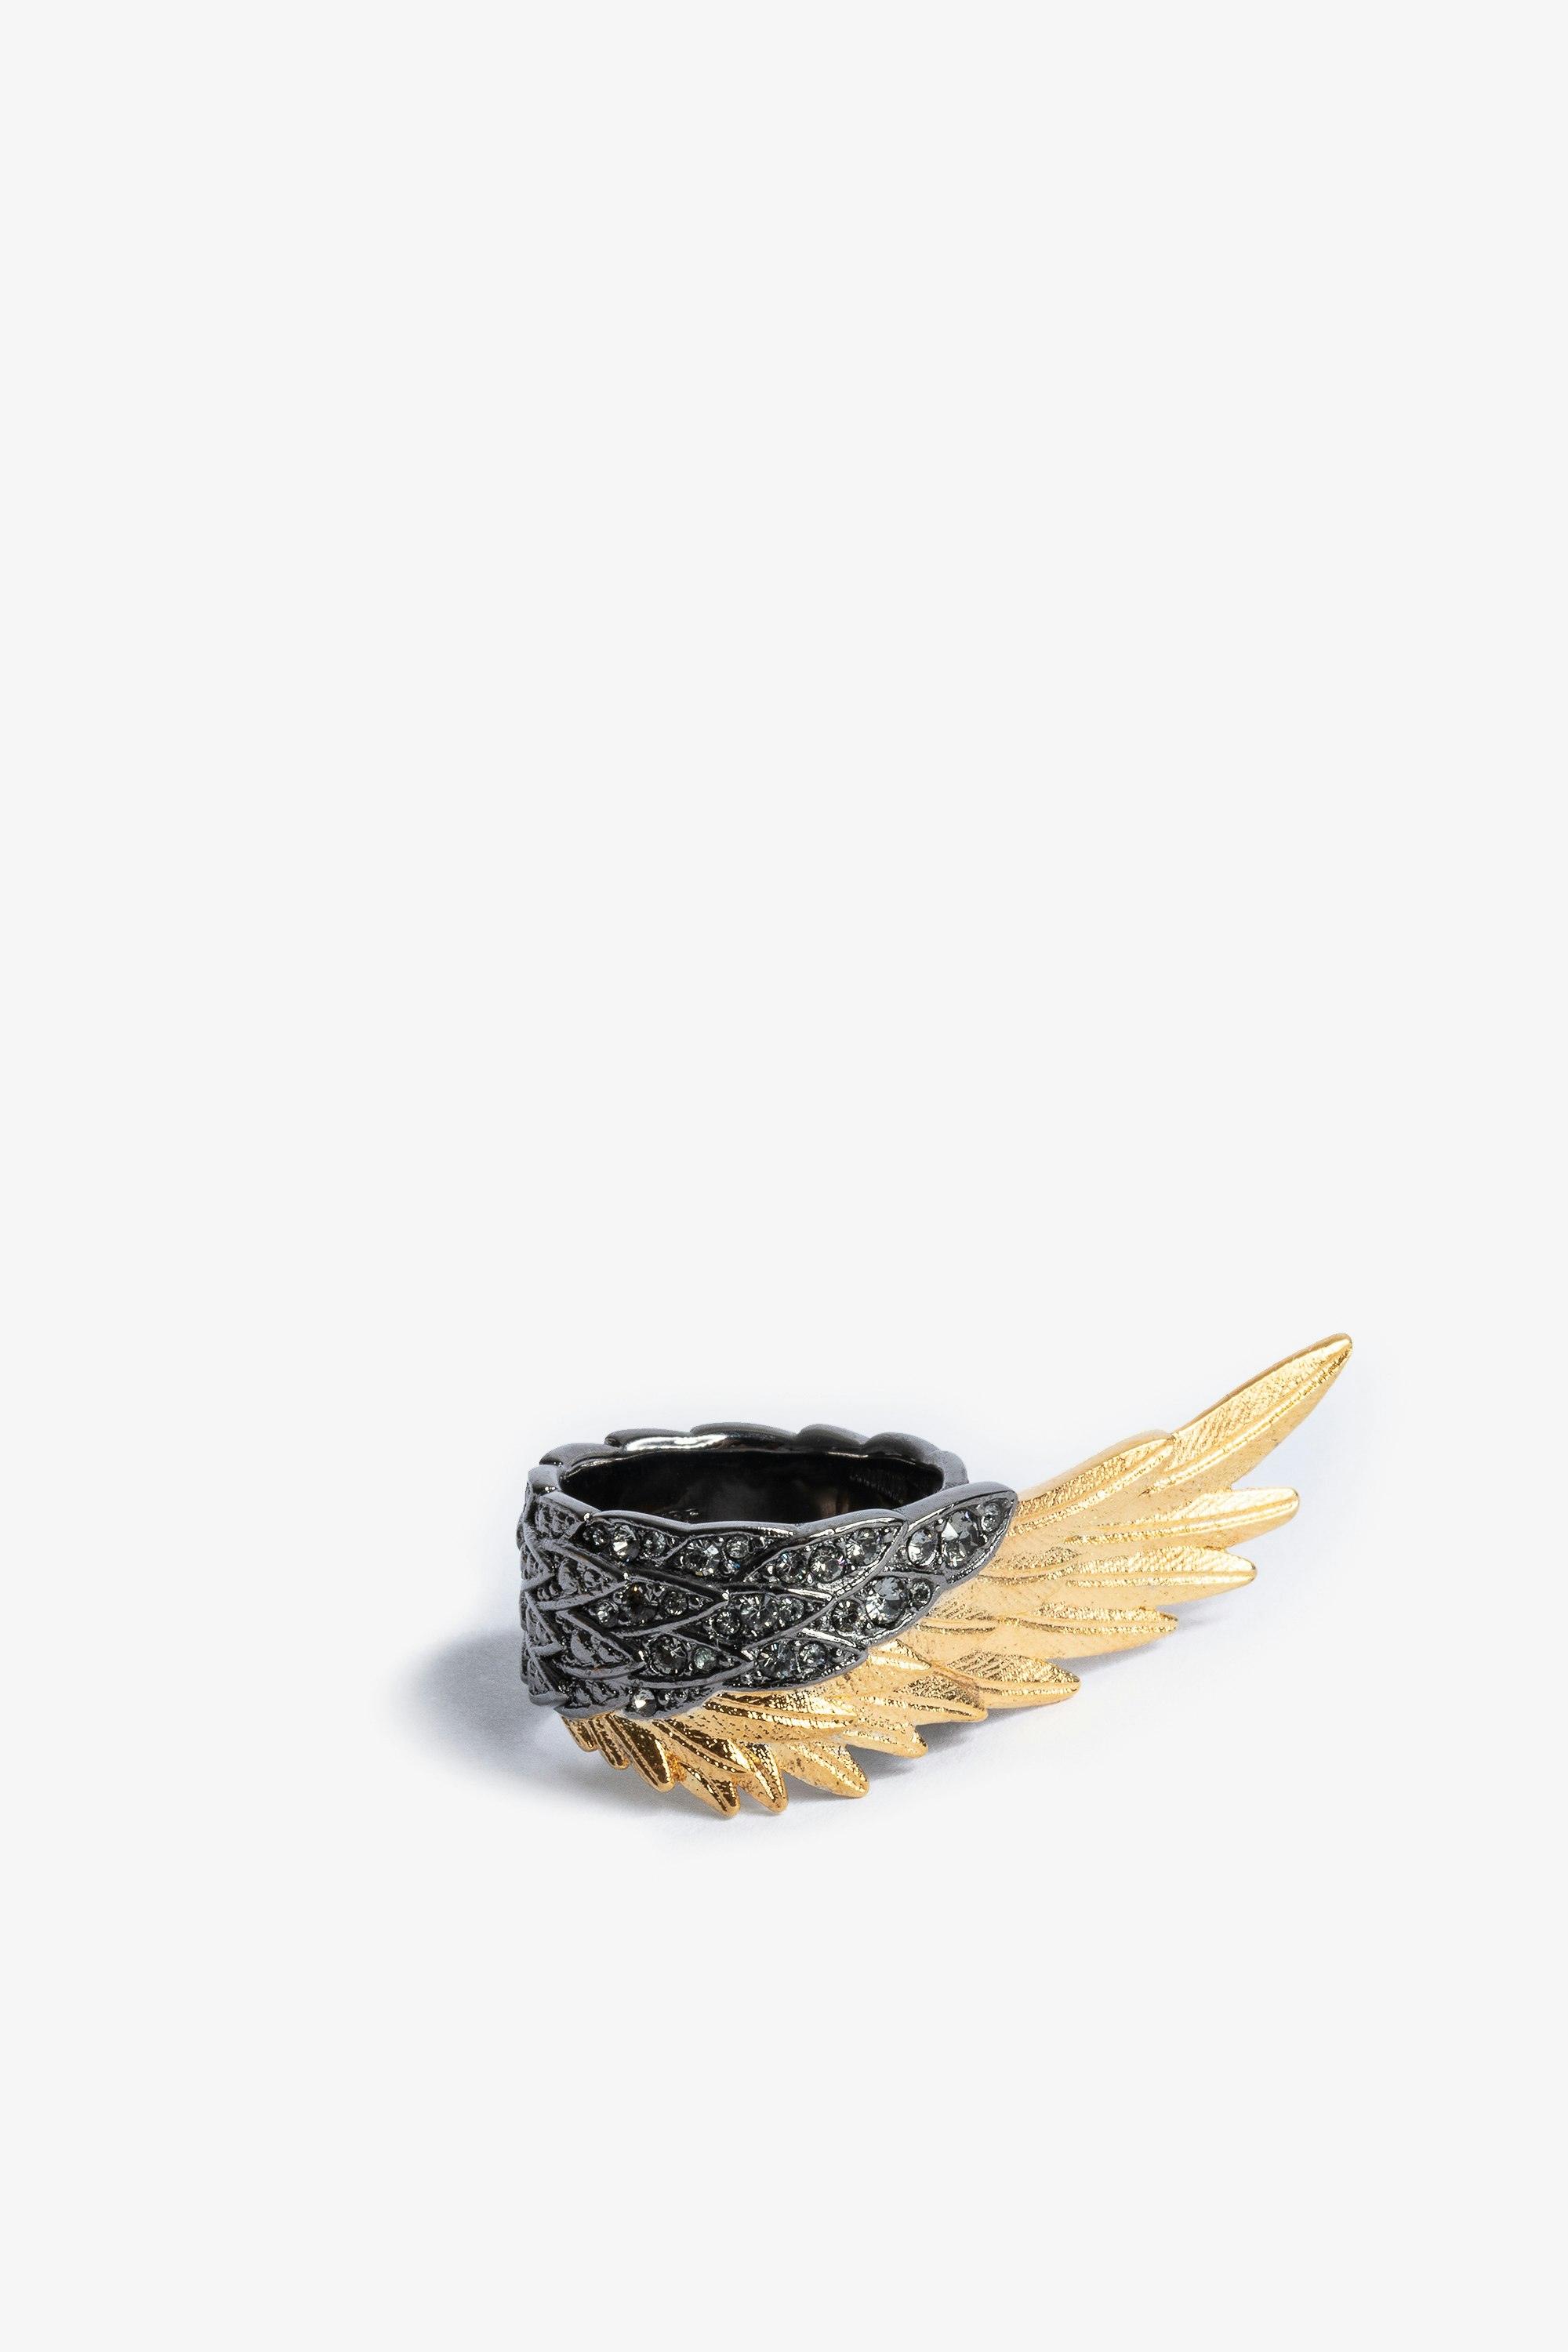 Anello Rock Feather Spread Your Wings Anello in ottone dorato e annerito con strass donna.